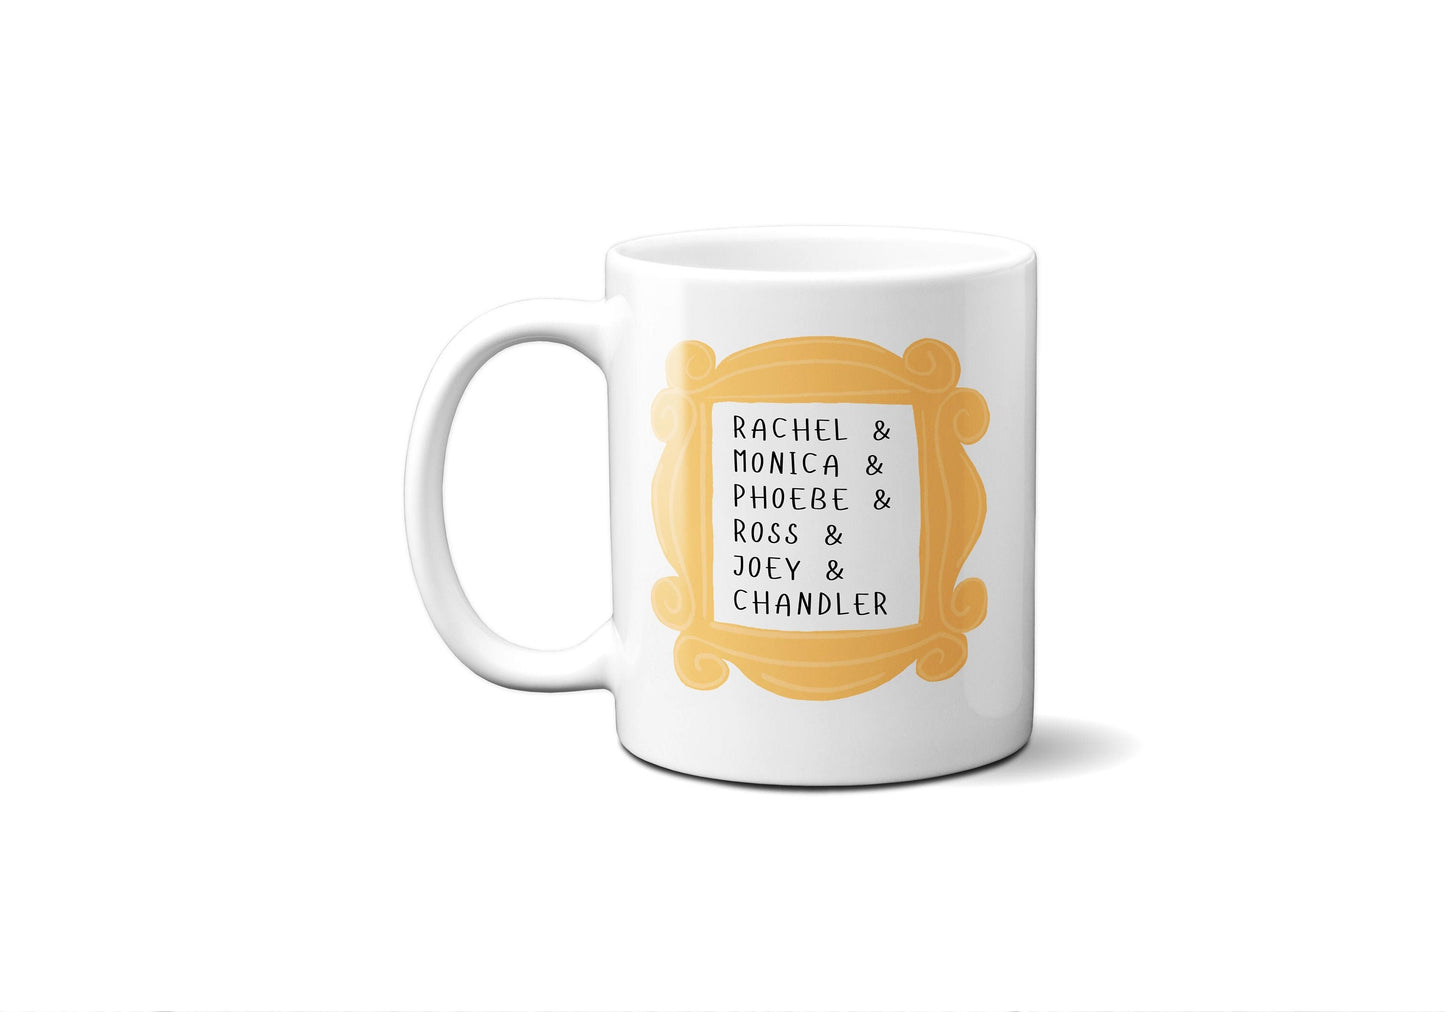 Friends TV Show Merchandise - Rachel Joey Monica Phoebe Chandler Ross  Friends Mug